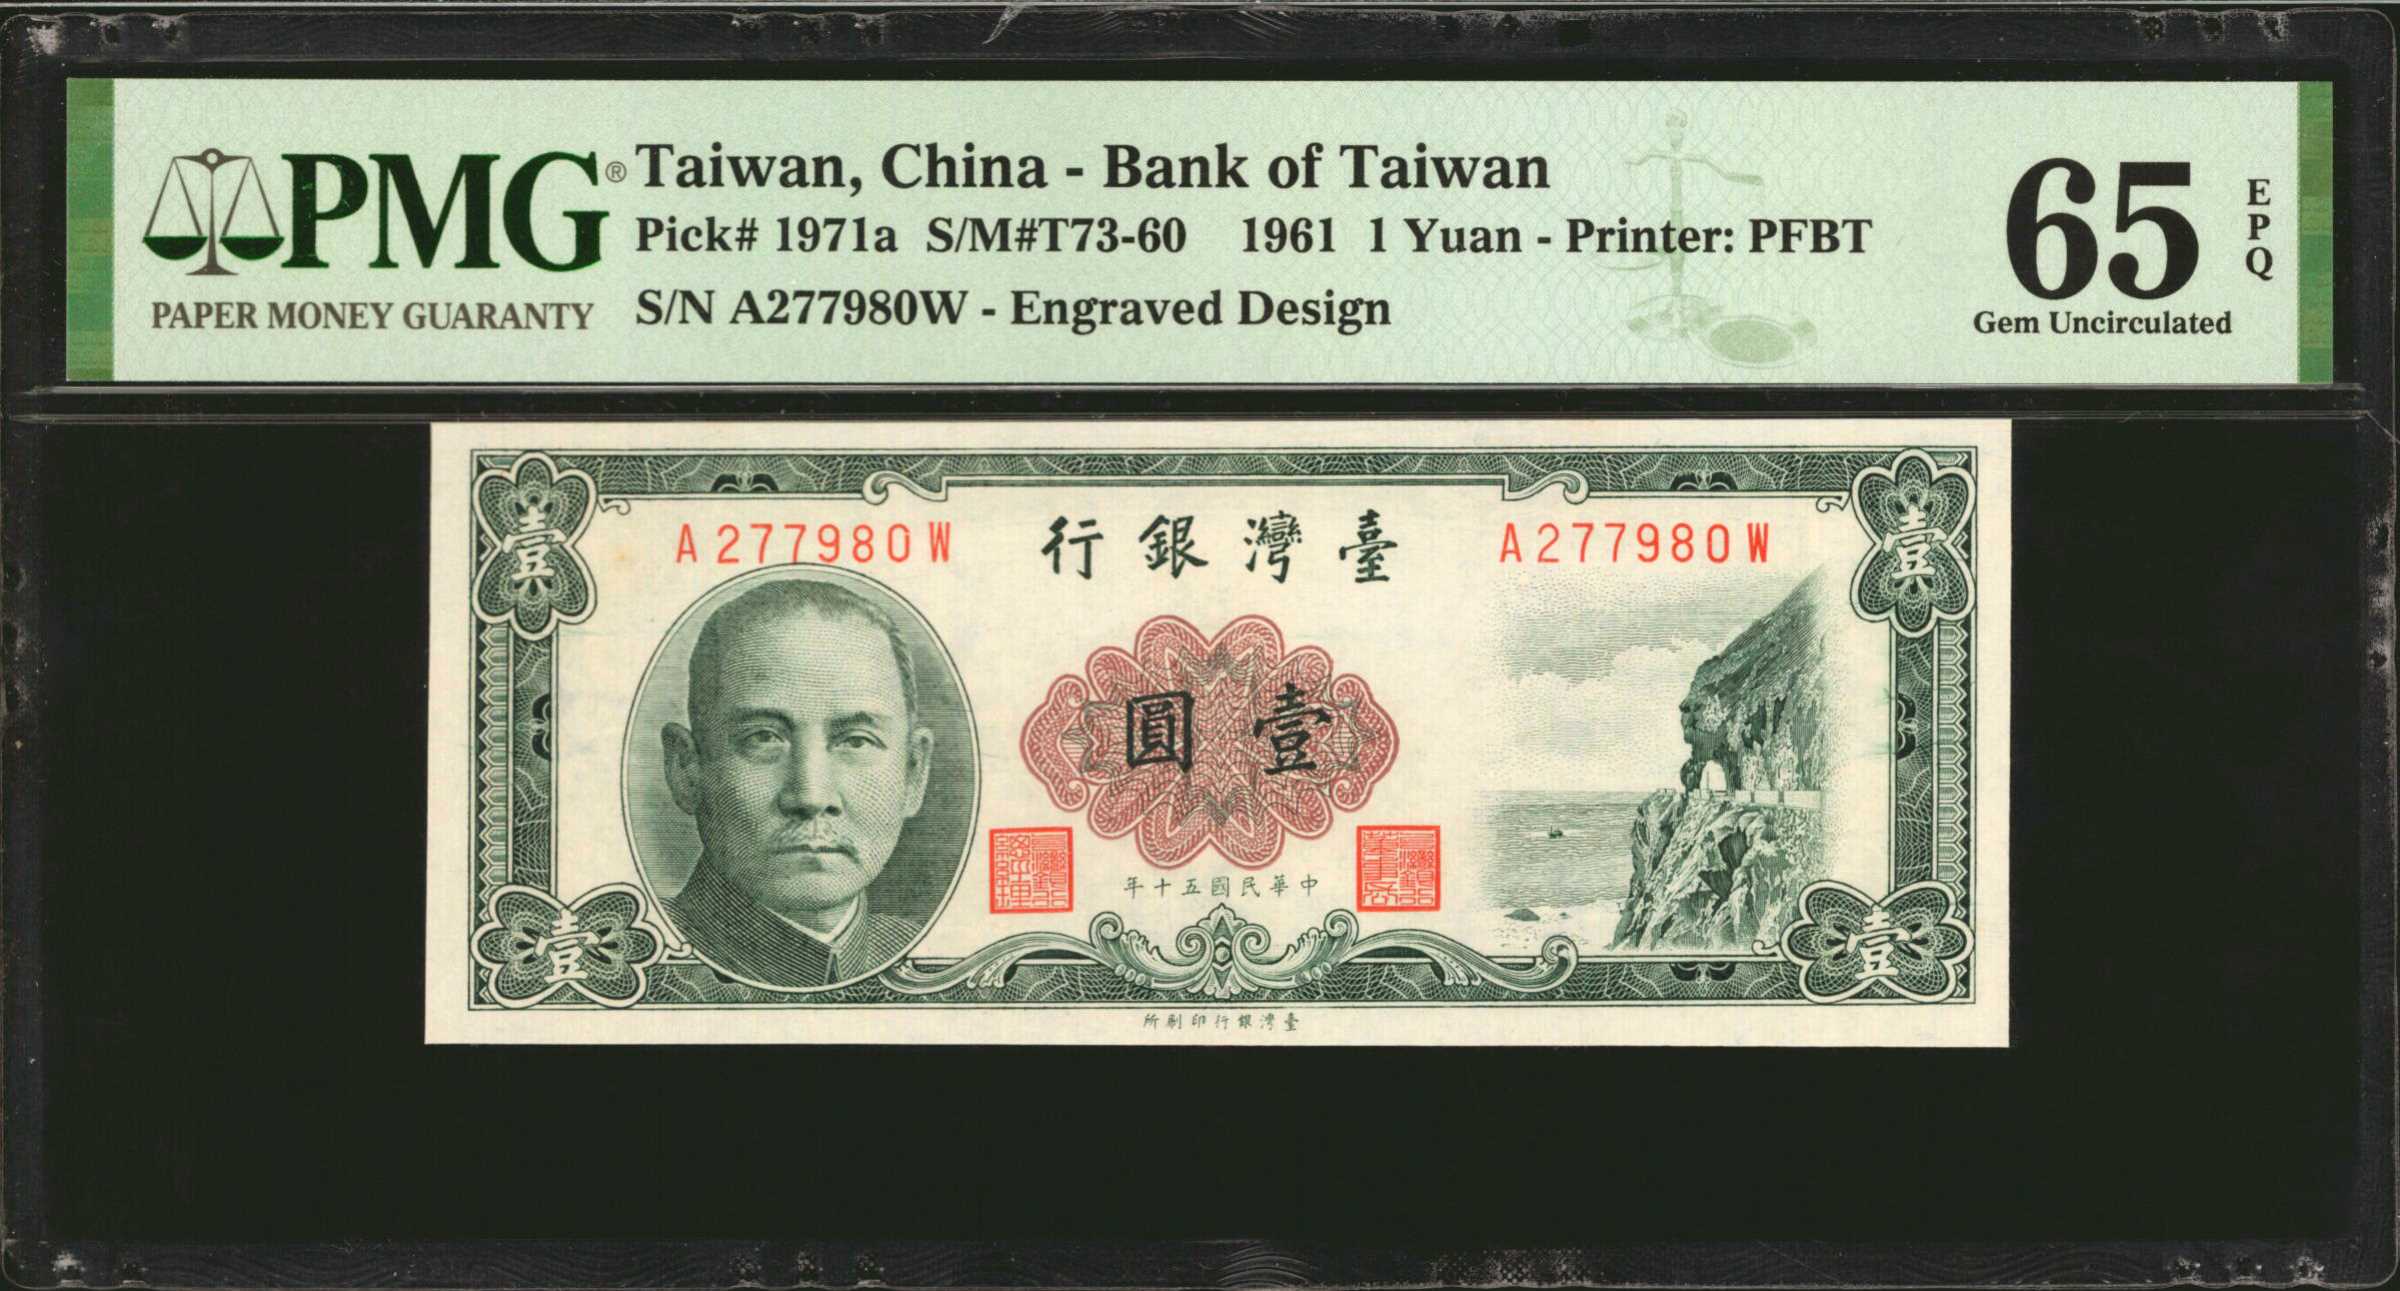 CHINA--TAIWAN. Bank of Taiwan. 1 Yuan